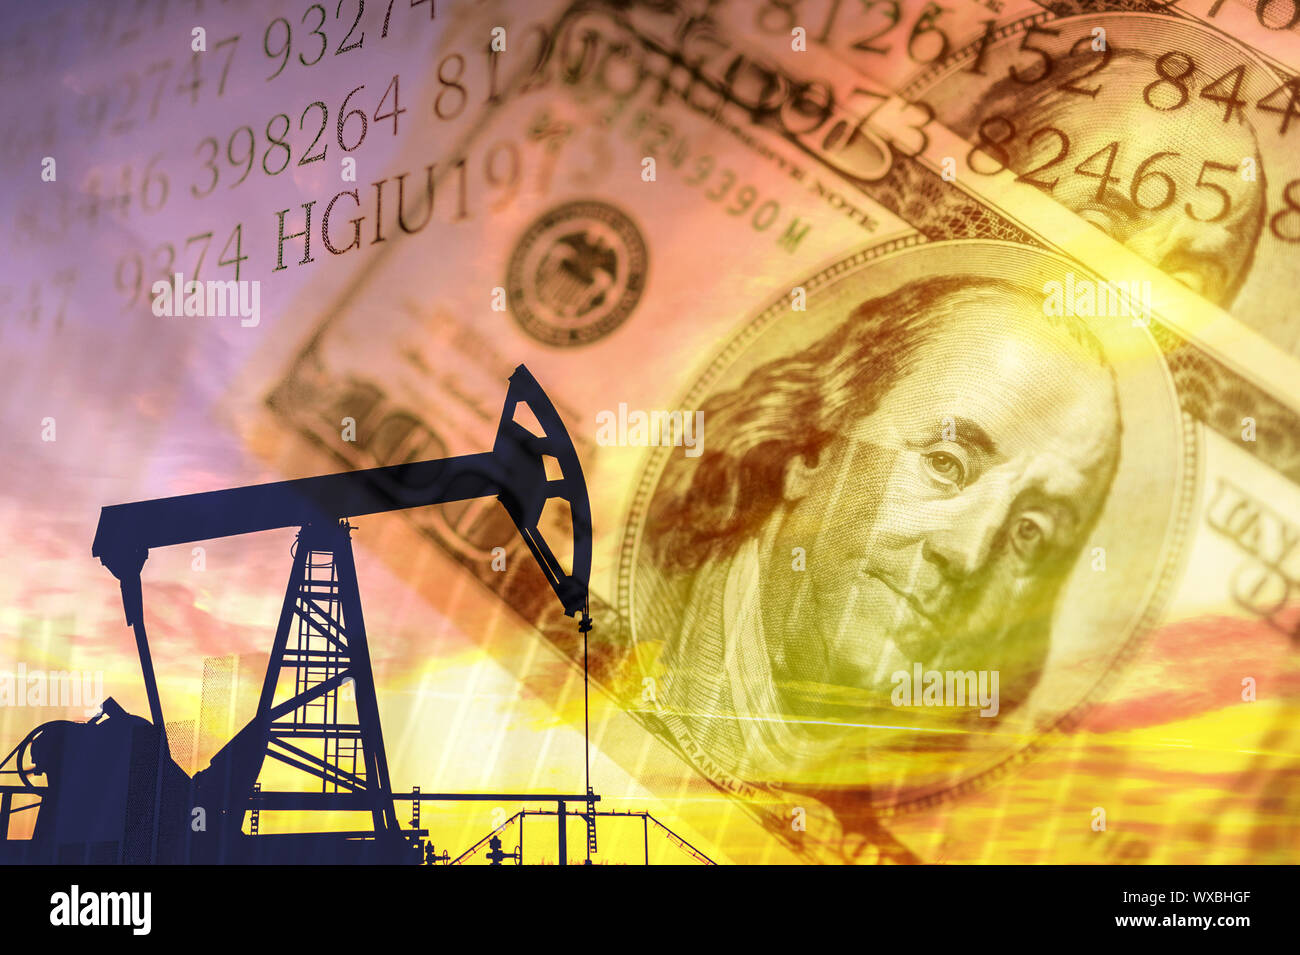 Öl- und Gasindustrie, geschäftlichen und finanziellen Hintergrund. Bergbau, Öl Raffinerie Wirtschaft und Börse Konzept. Stockfoto